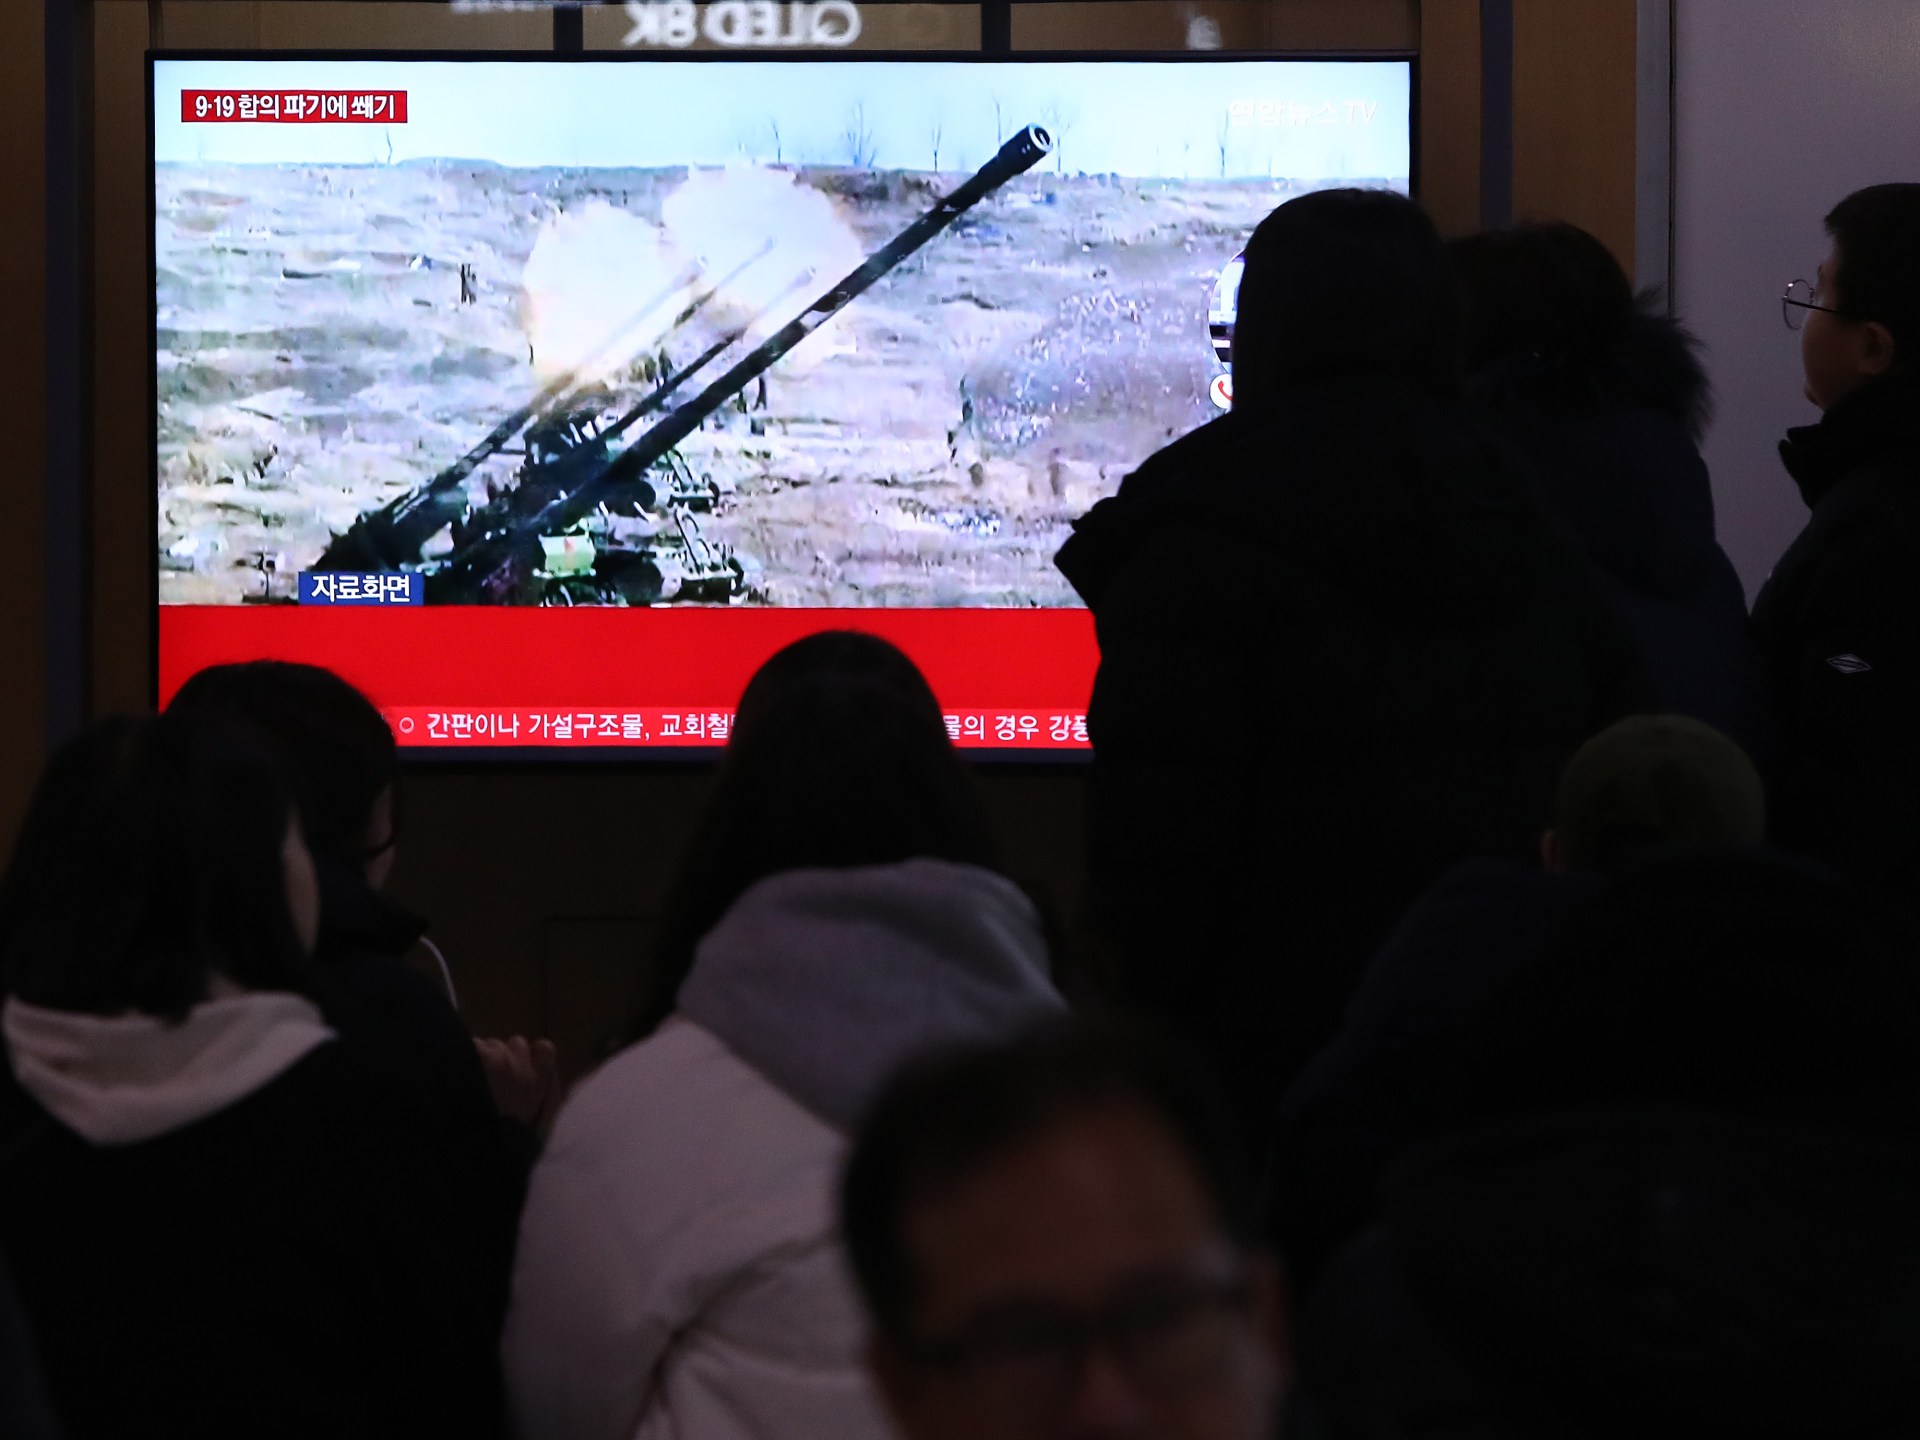 شقيقة زعيم كوريا الشمالية: جيشنا سيطلق وابلا من النيران عند أي استفزاز | أخبار – البوكس نيوز